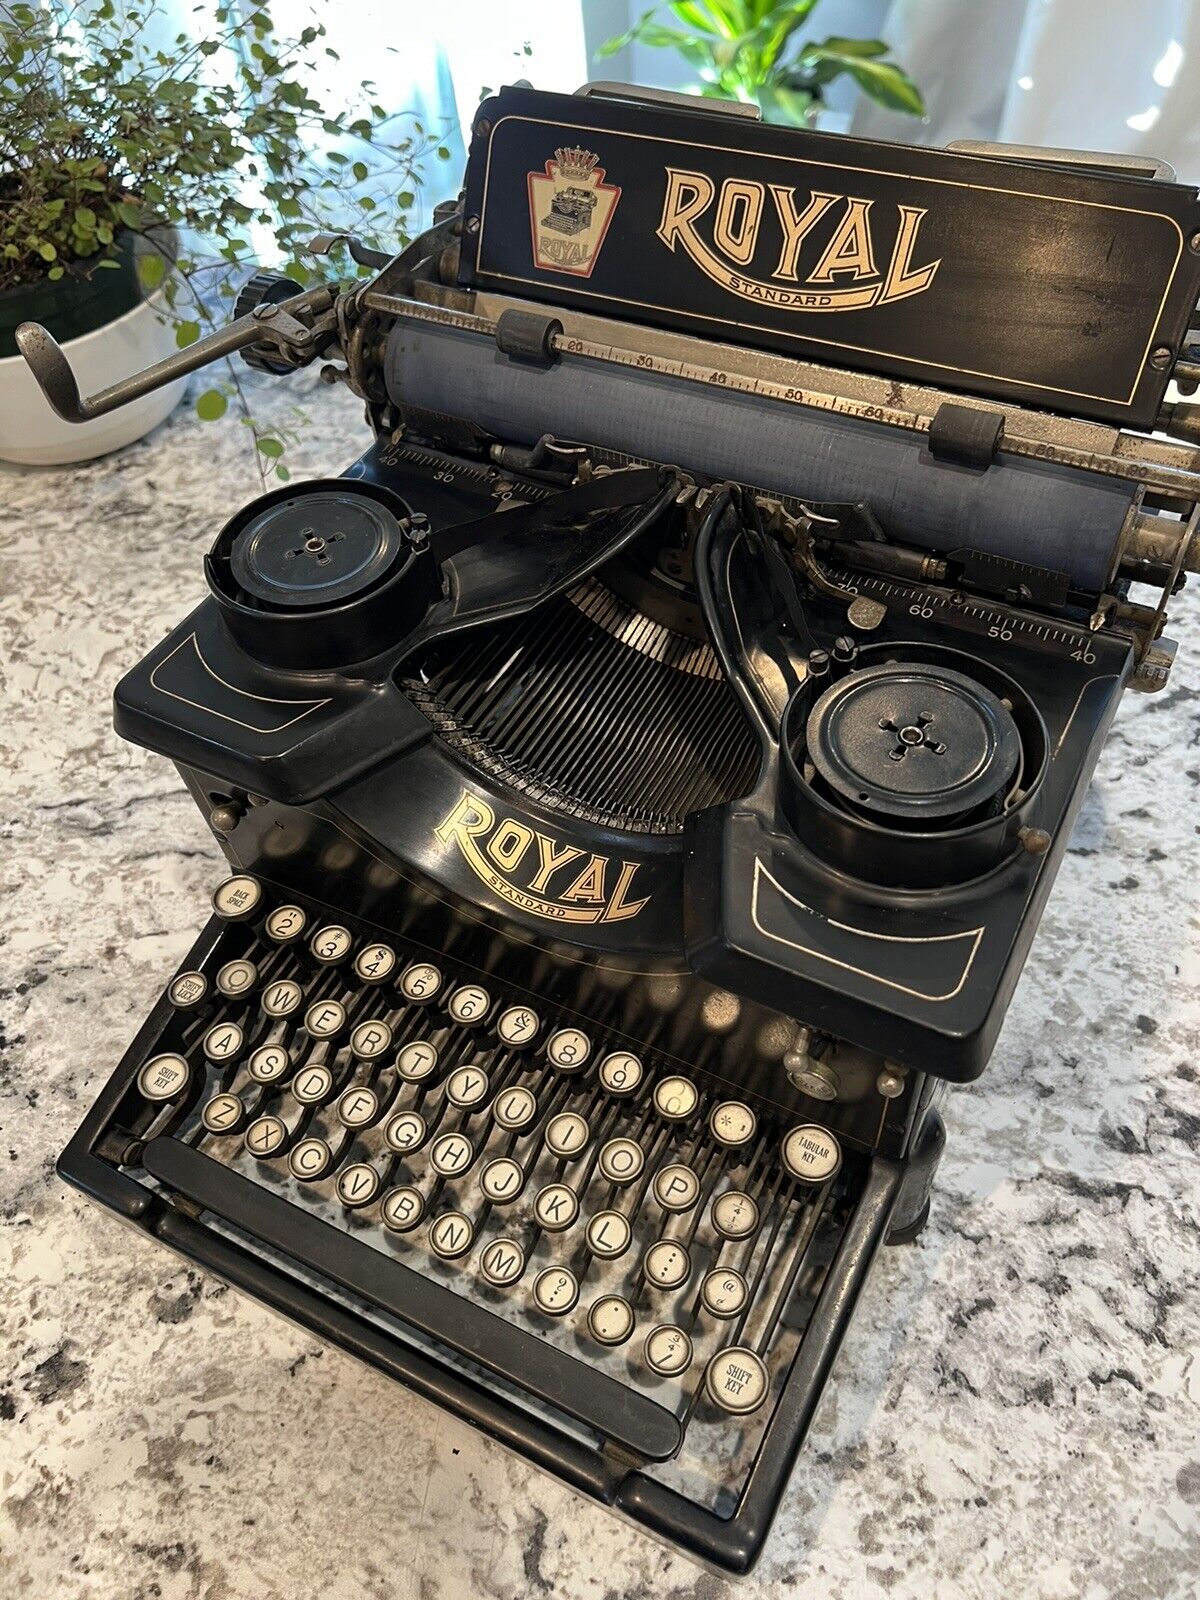 Royal no. 10 typewriter